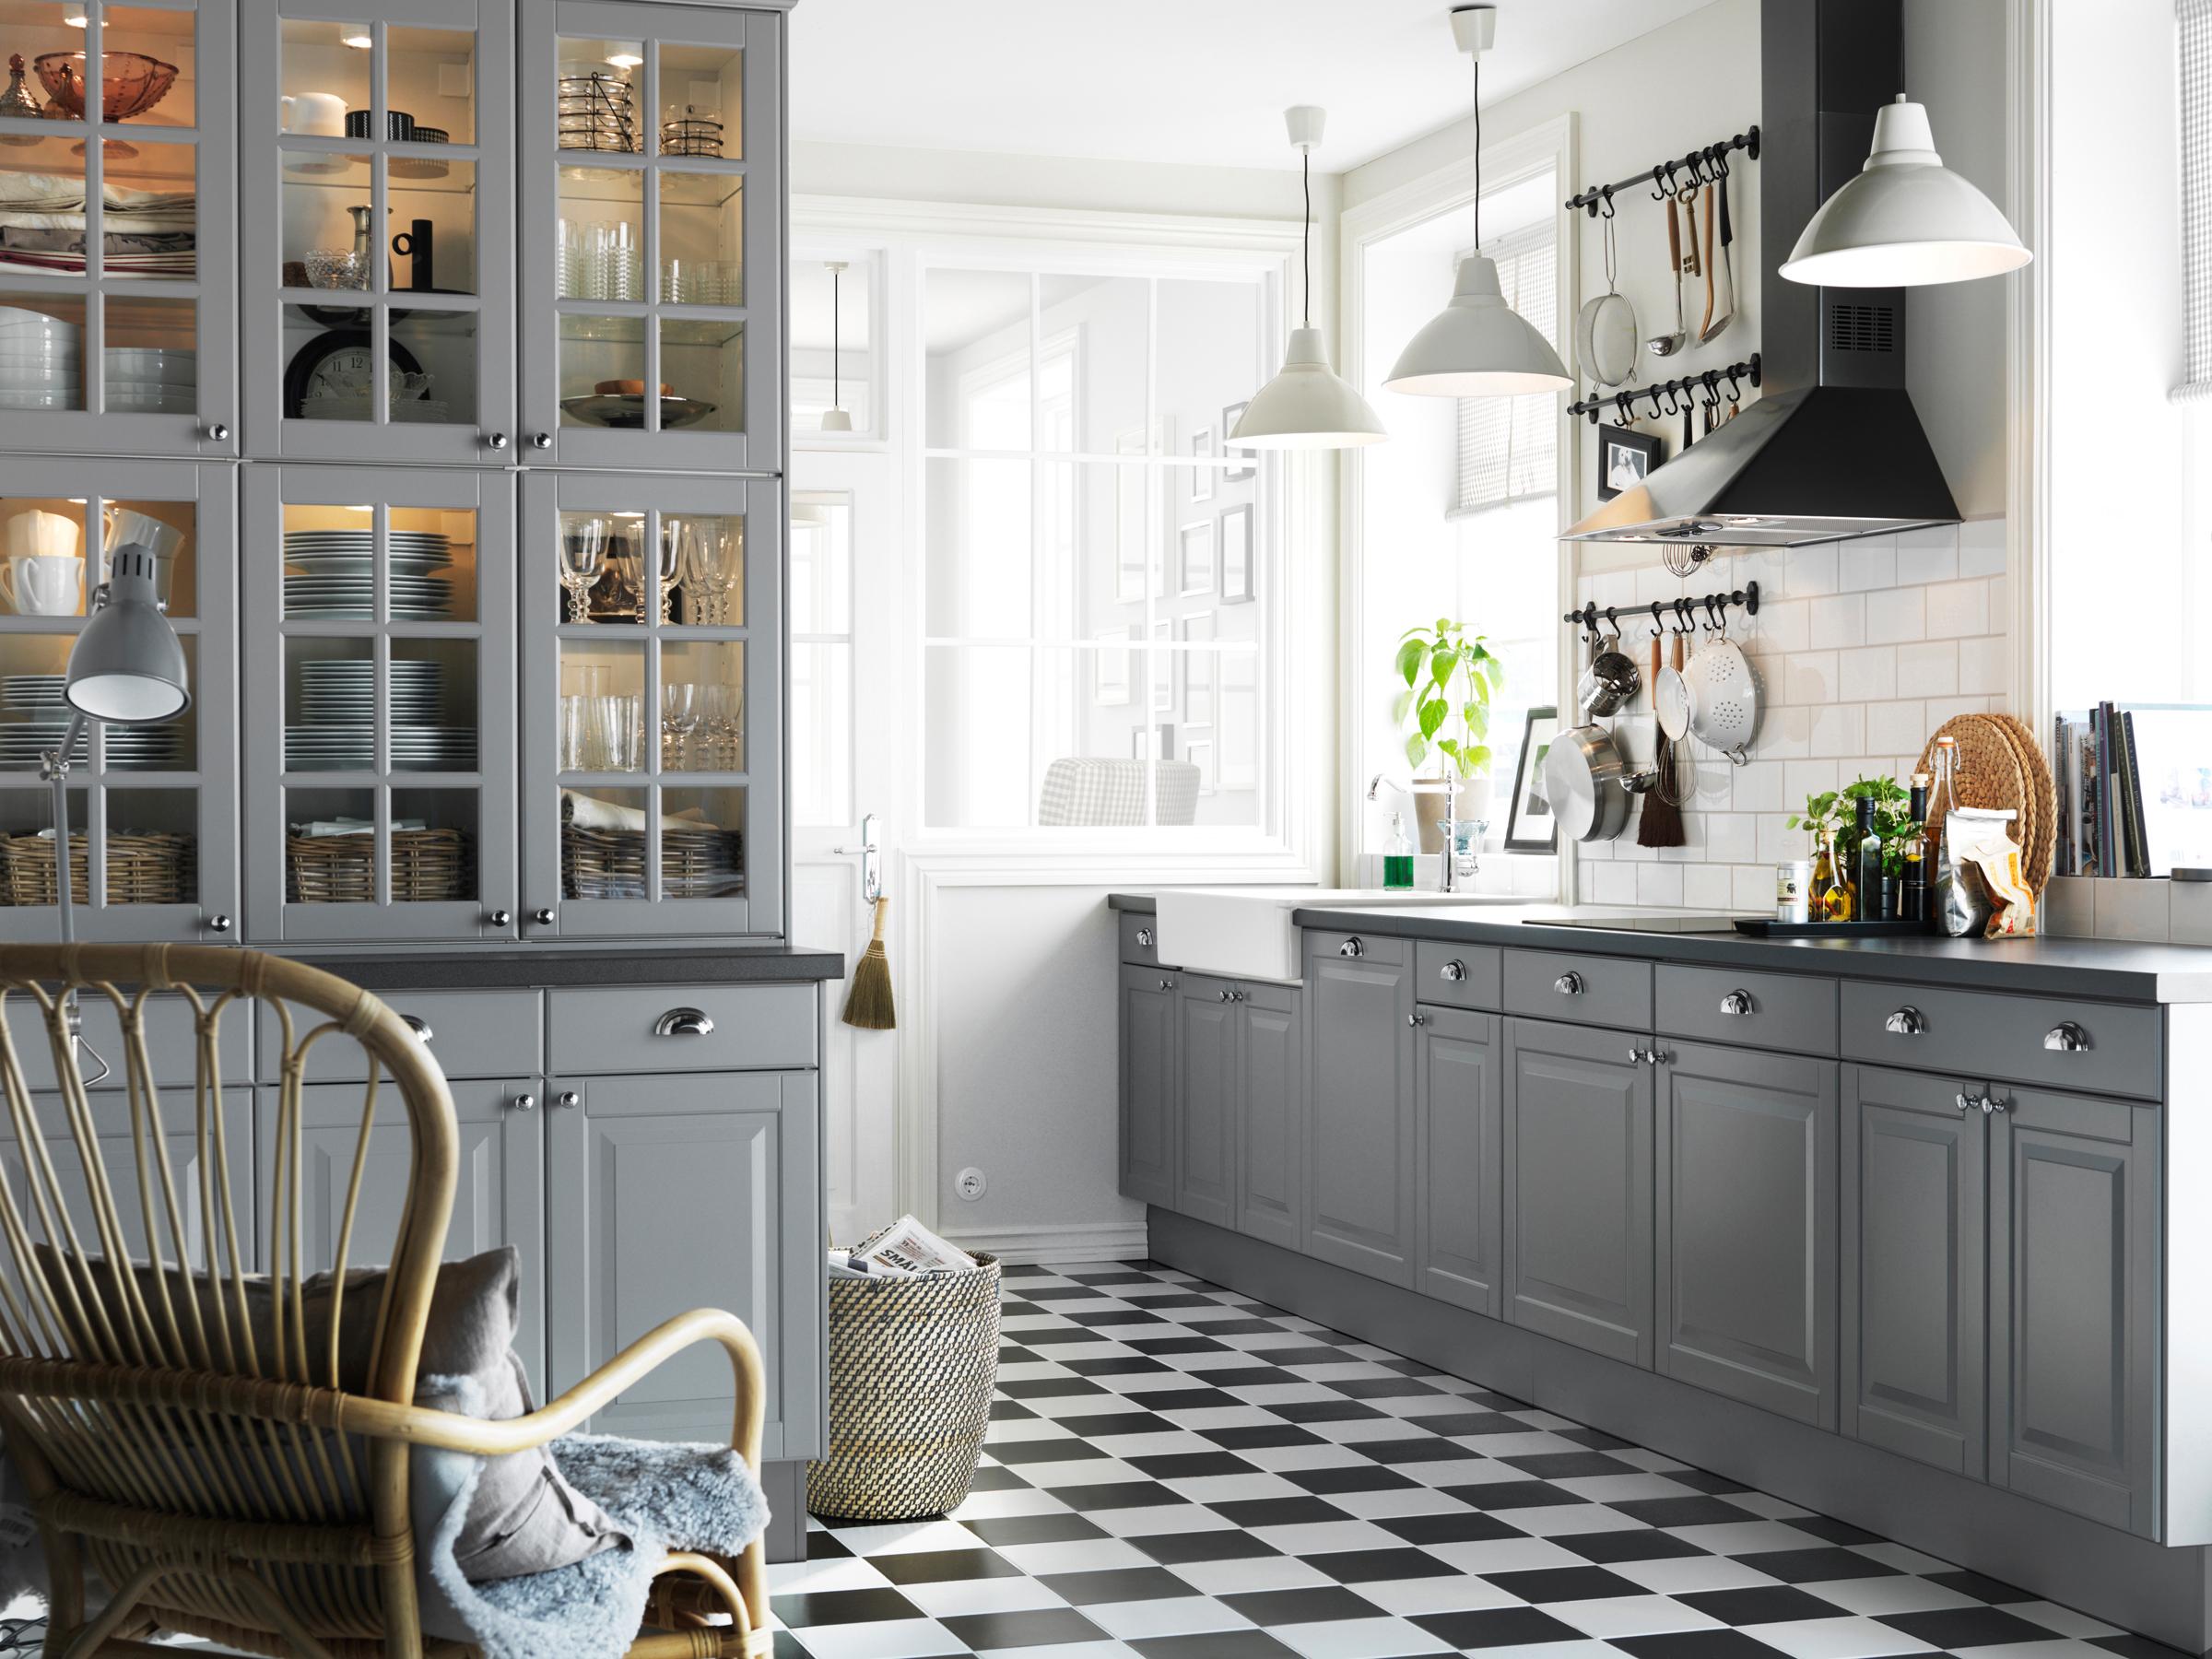 Graue Einbauküche im Landhausstil #landhausstil ©Inter IKEA Systems B.V